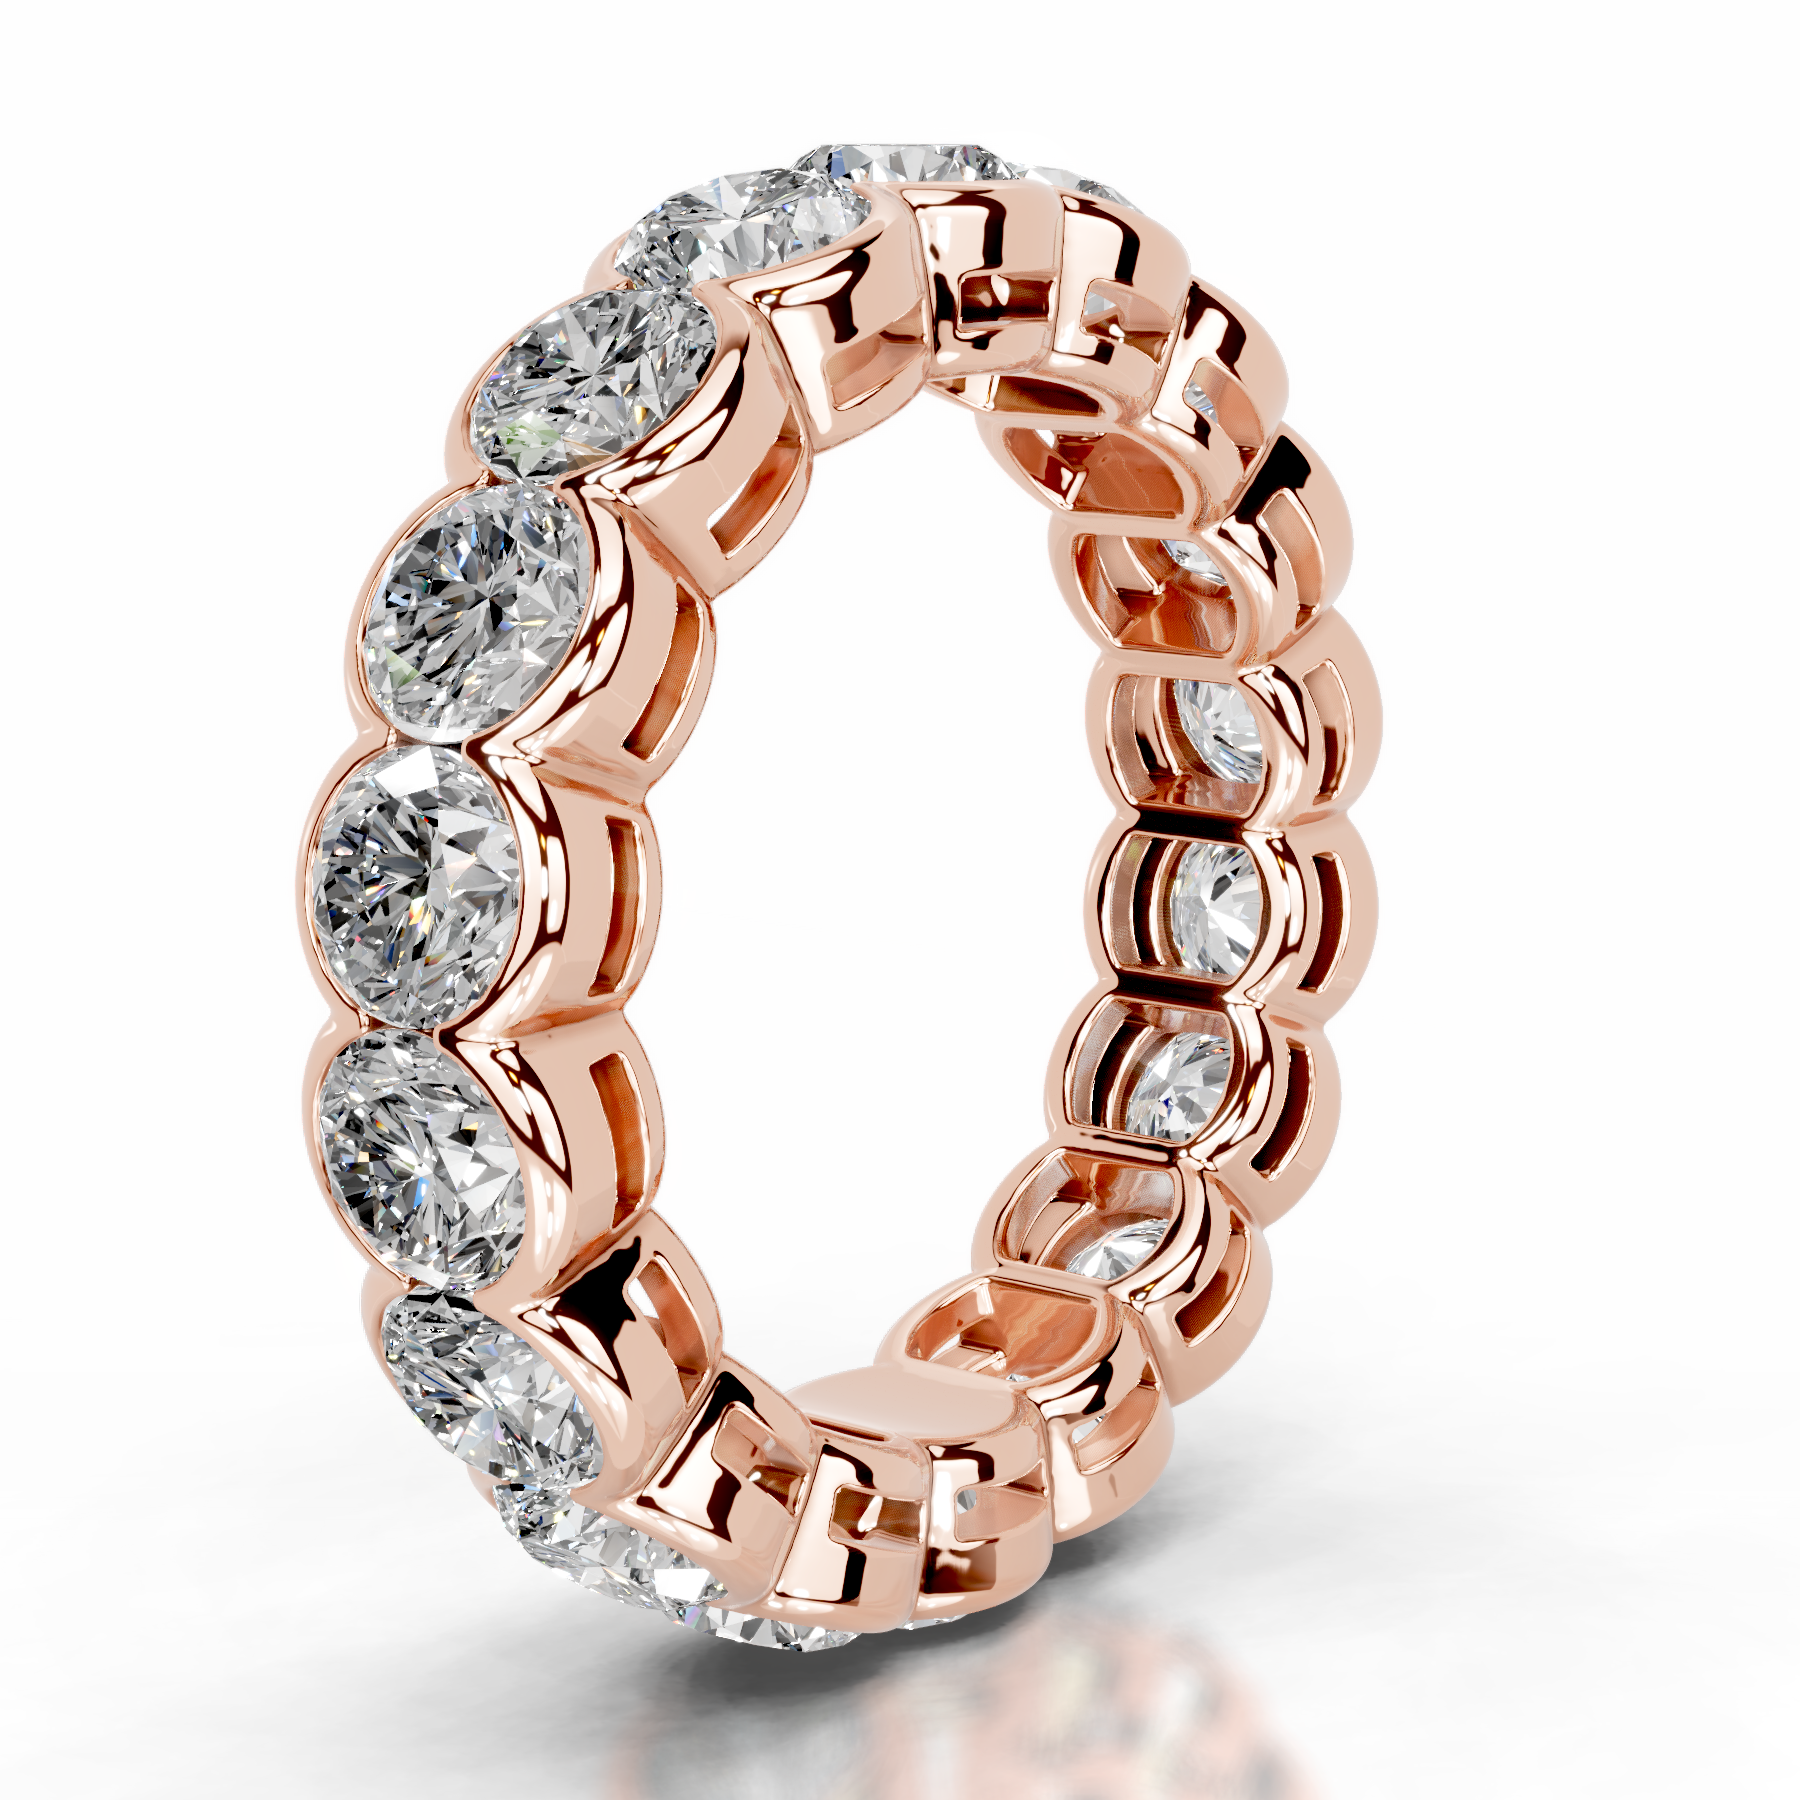 Velinda Lab Grown Diamond Wedding Ring   (4 Carat) -14K Rose Gold